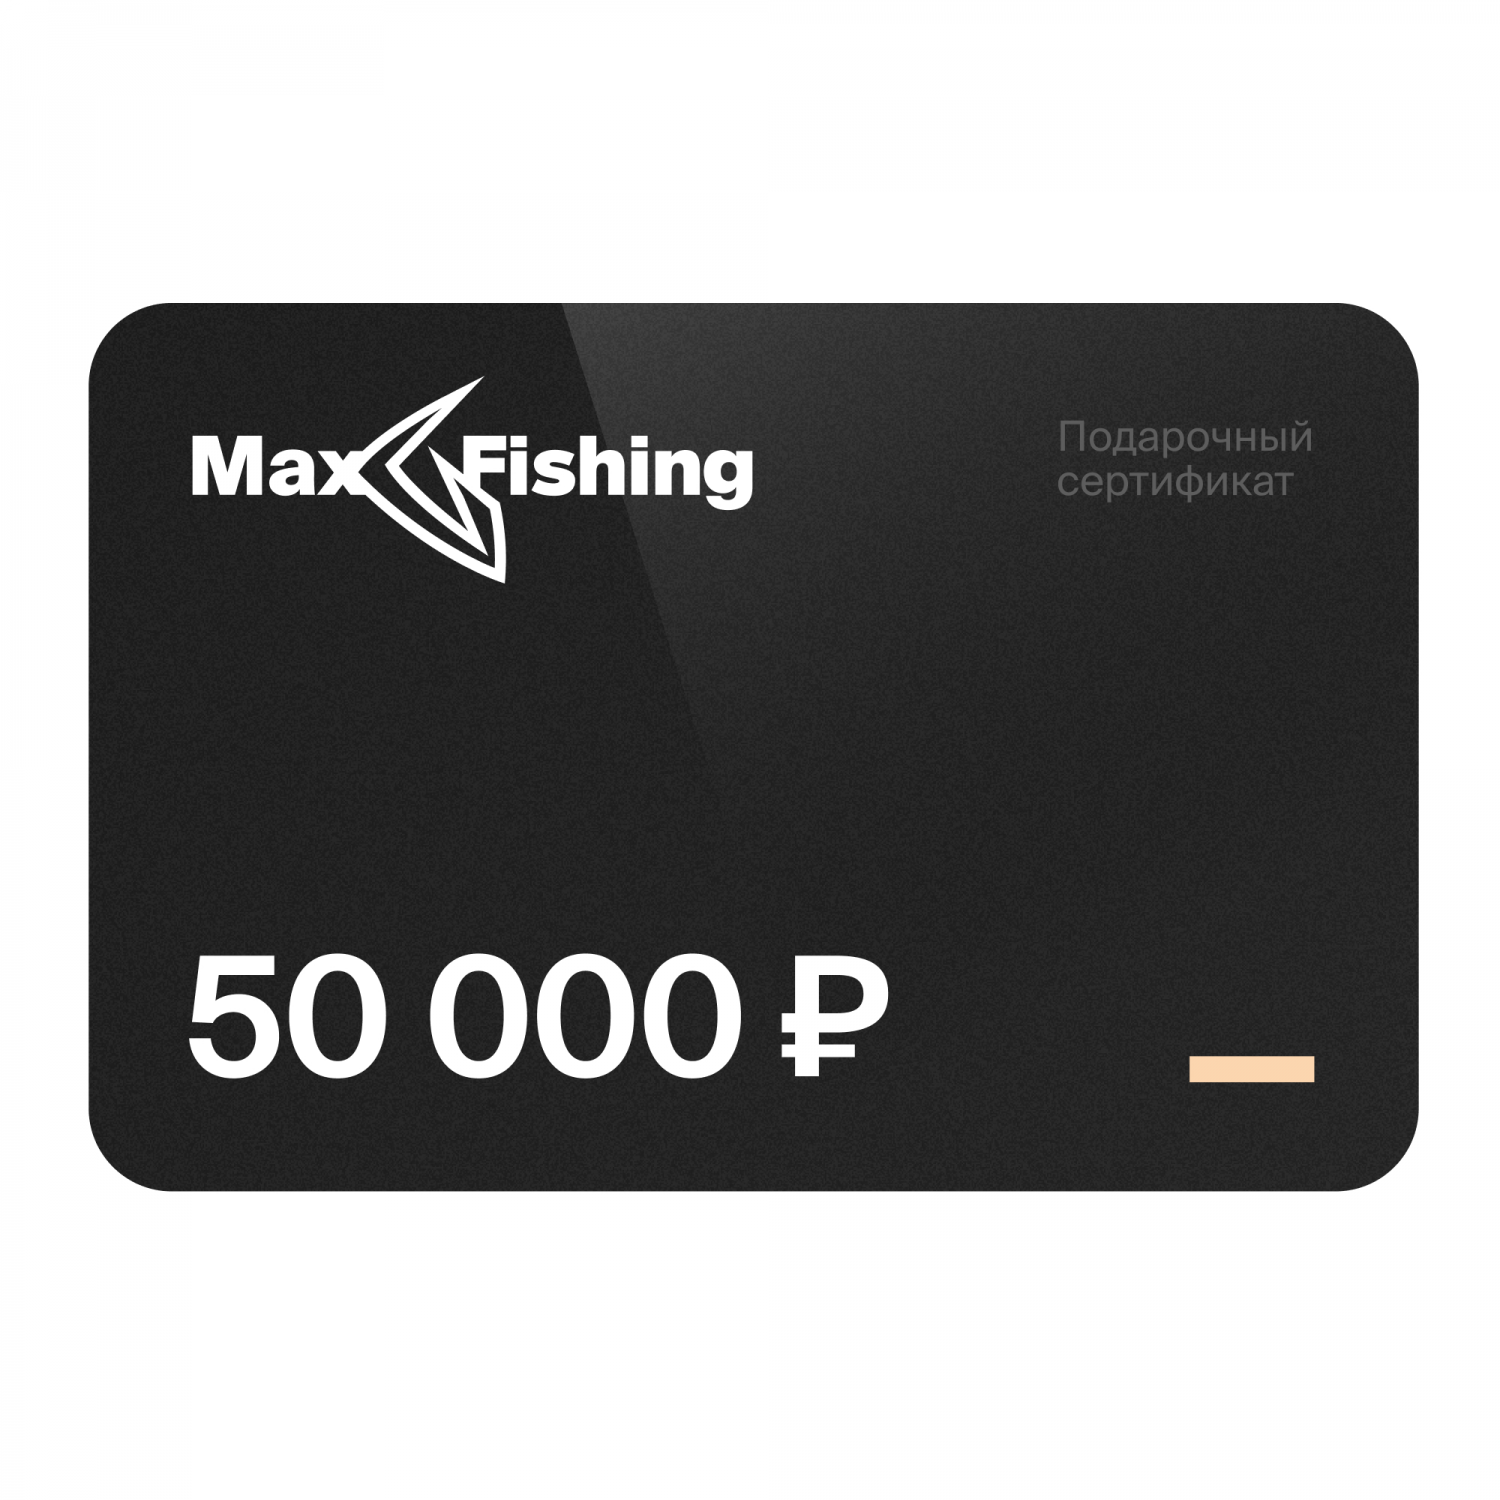 Подарочный сертификат MaxFishing 50 000 ₽ подарочный сертификат mr right на 5 000 рублей